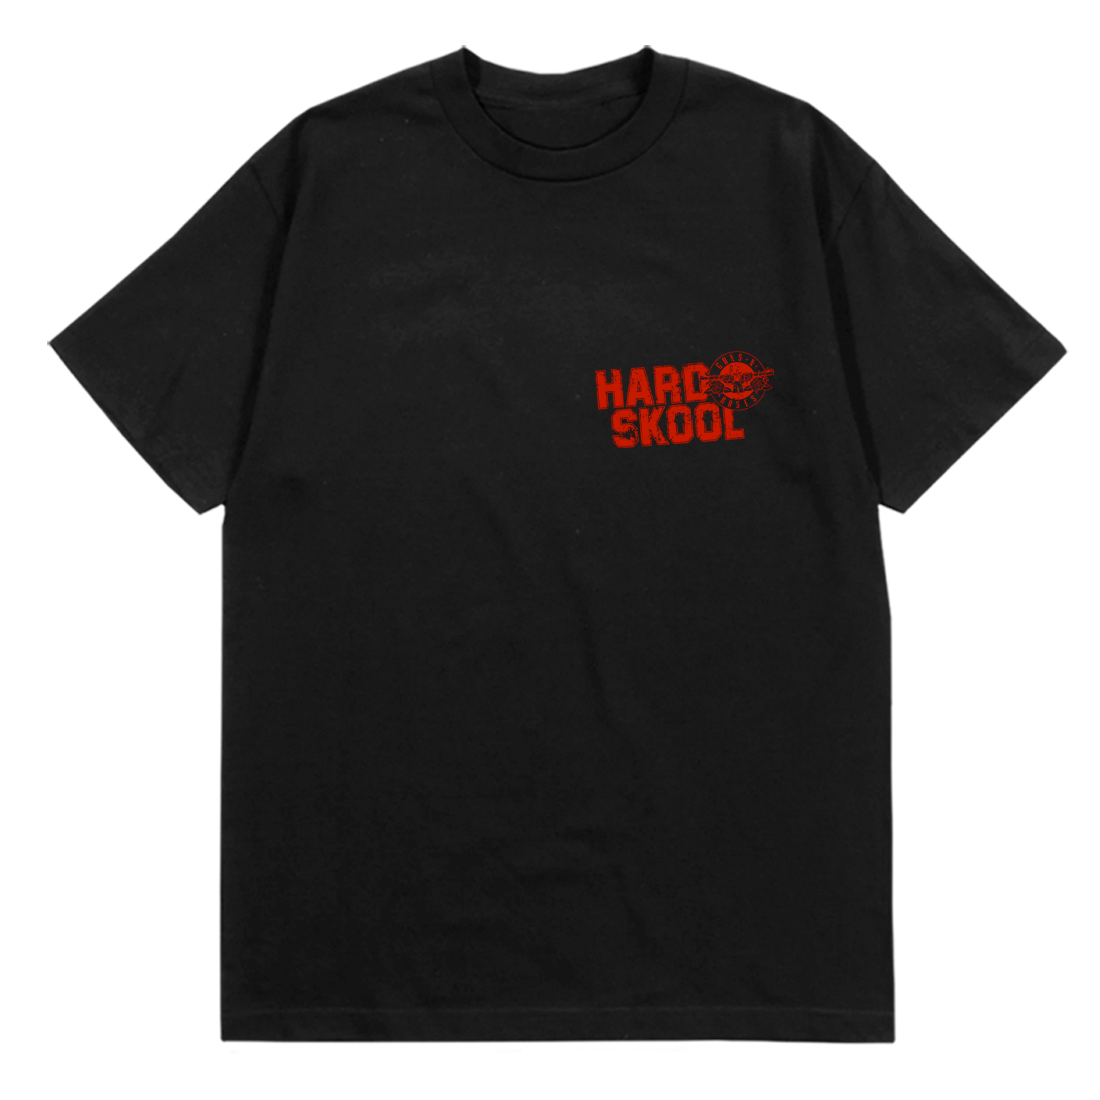 Guns N Roses - Hard Skool T-Shirt